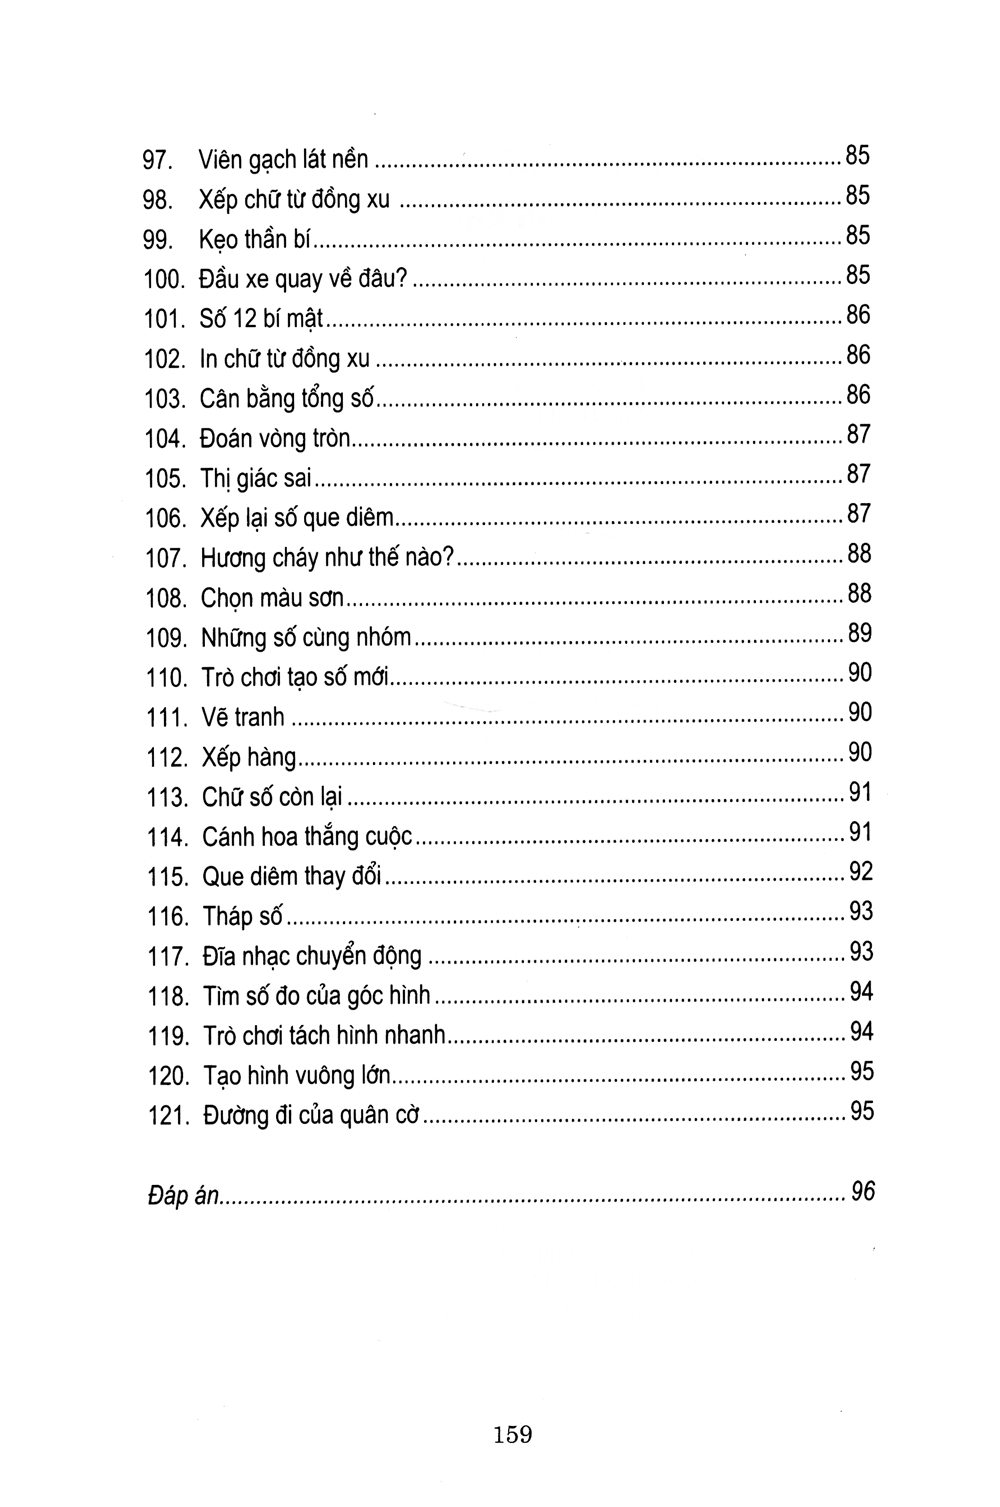 Tủ Sách Luyện Trí Thông Minh - Trò Chơi Phát Triển Tư Duy Từ Những Khối Hình 2017 PDF